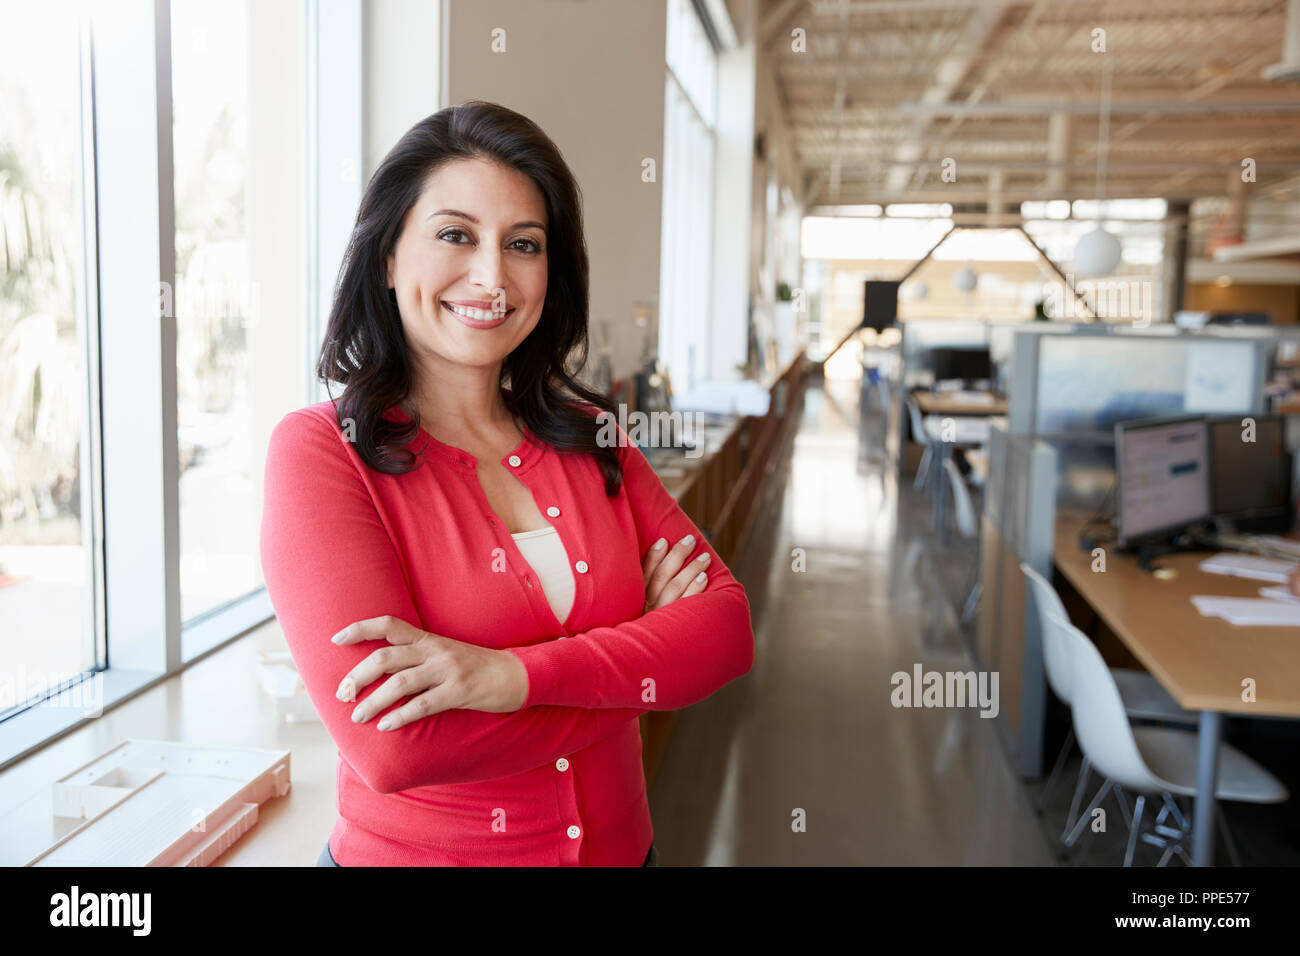 Femme architecte hispaniques smiling to camera dans un bureau Banque D'Images